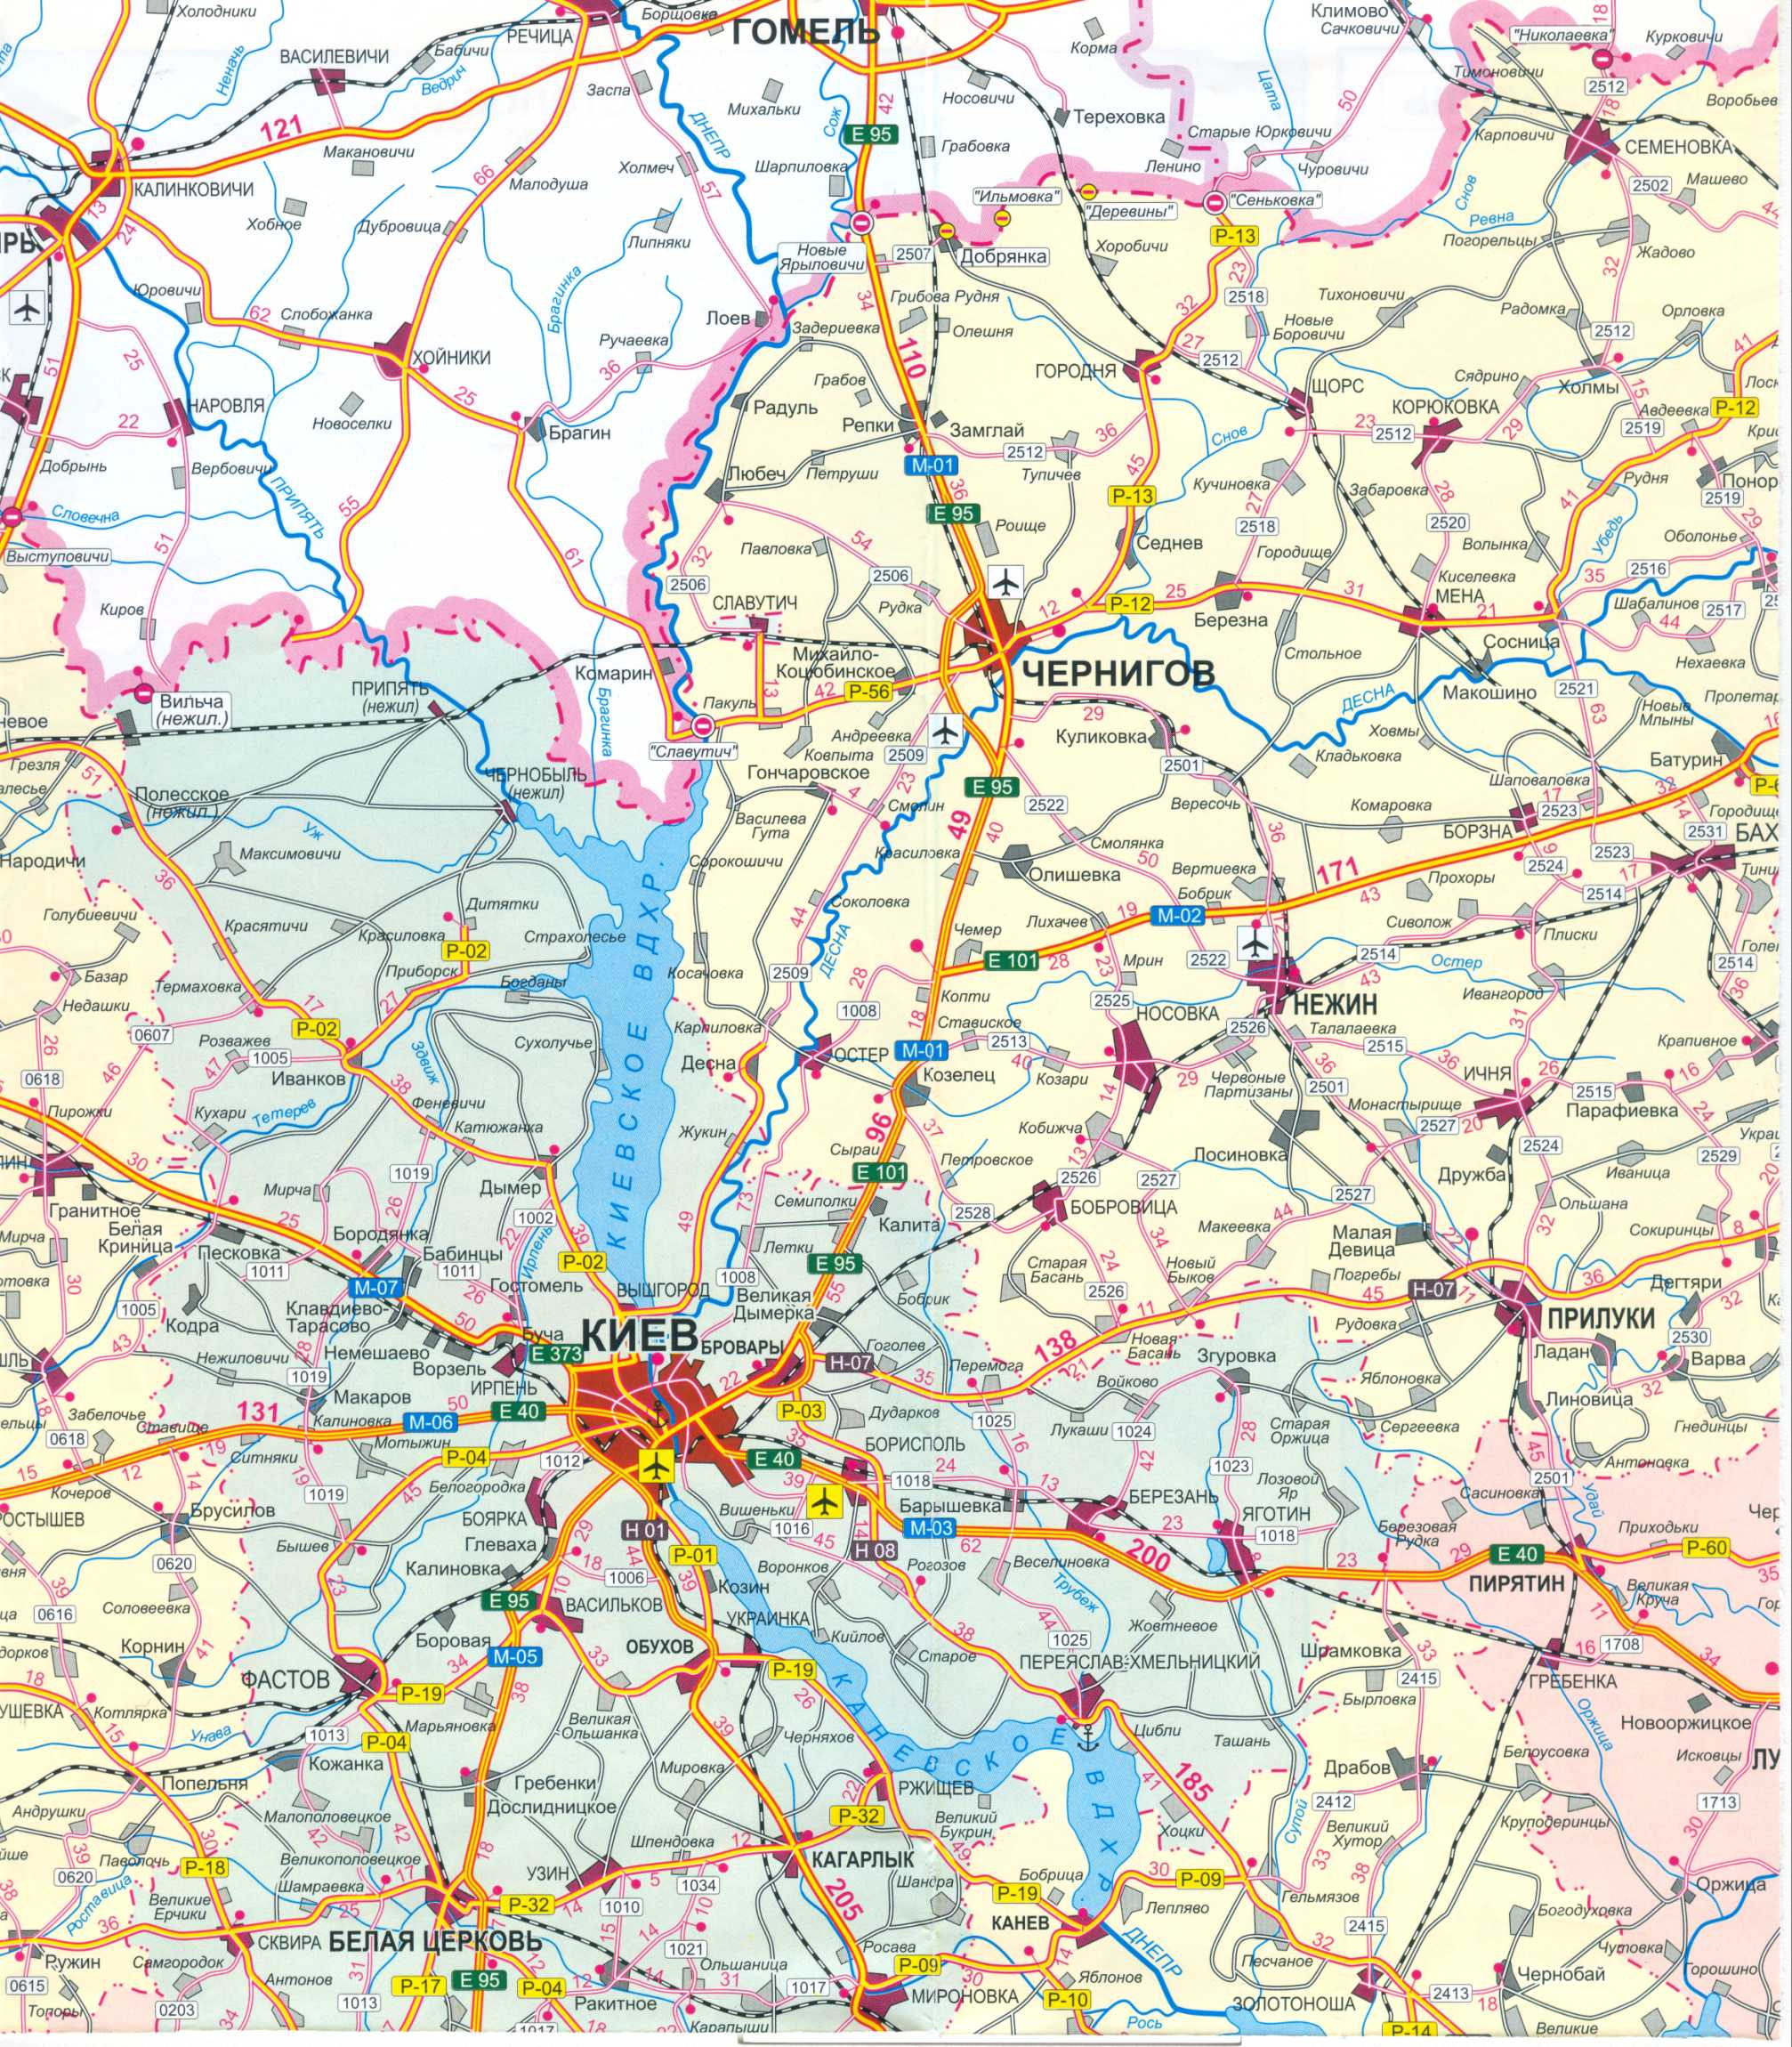 Карта Украины бесплатно. Карта дорог Украины скачать бесплатно. Большая карта дорог Украины бесплатно, C0